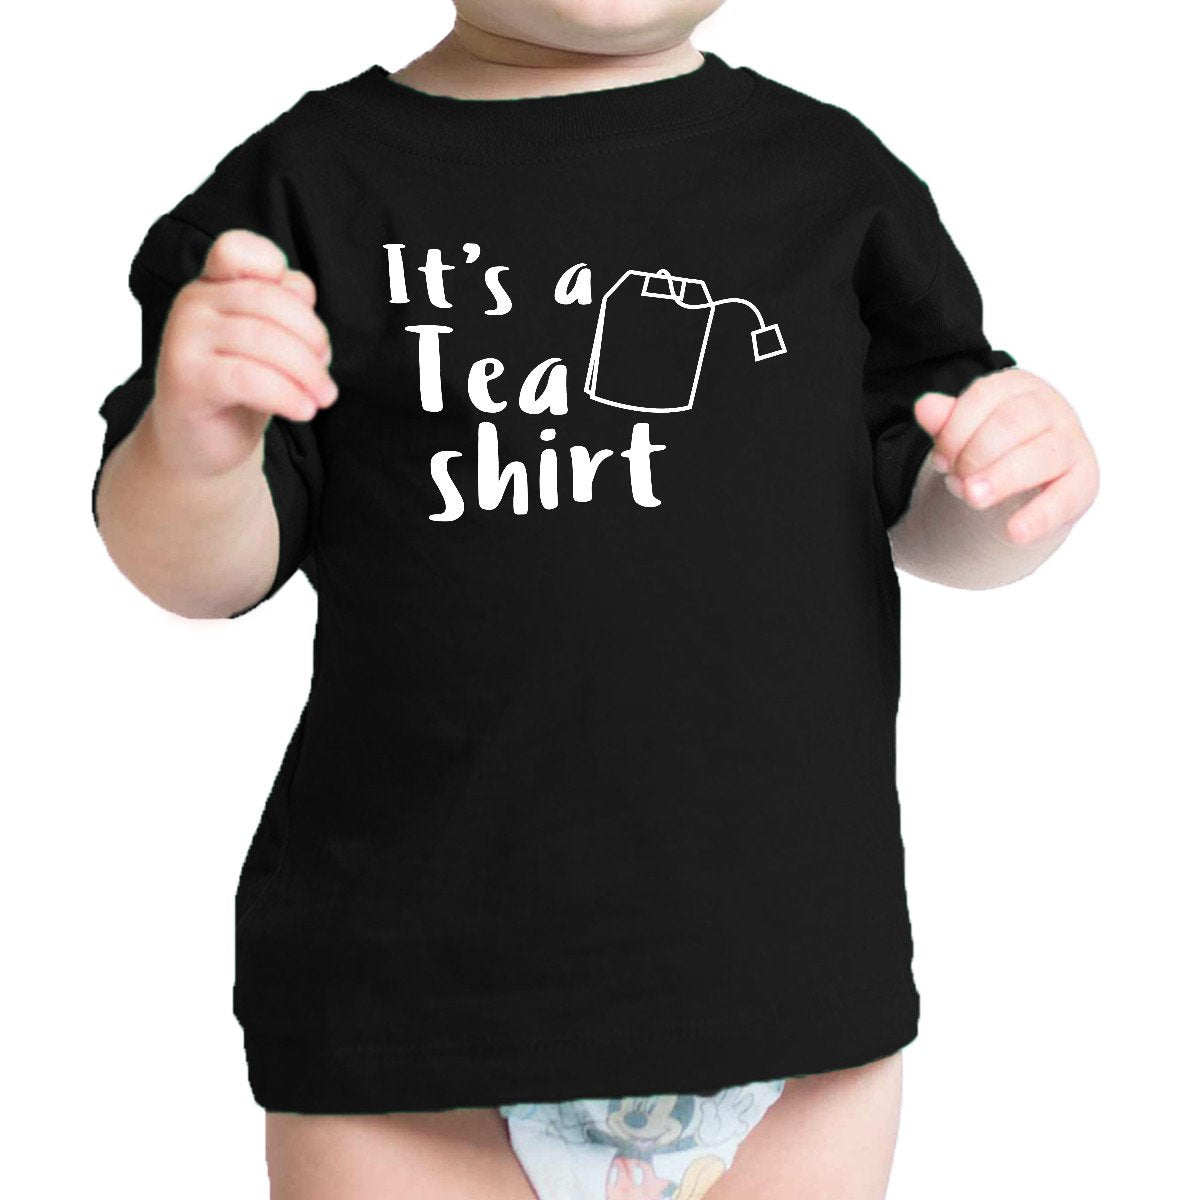 It's A Tea Shirt Black Infant Baby T Shirt Cotton Cute Design Top